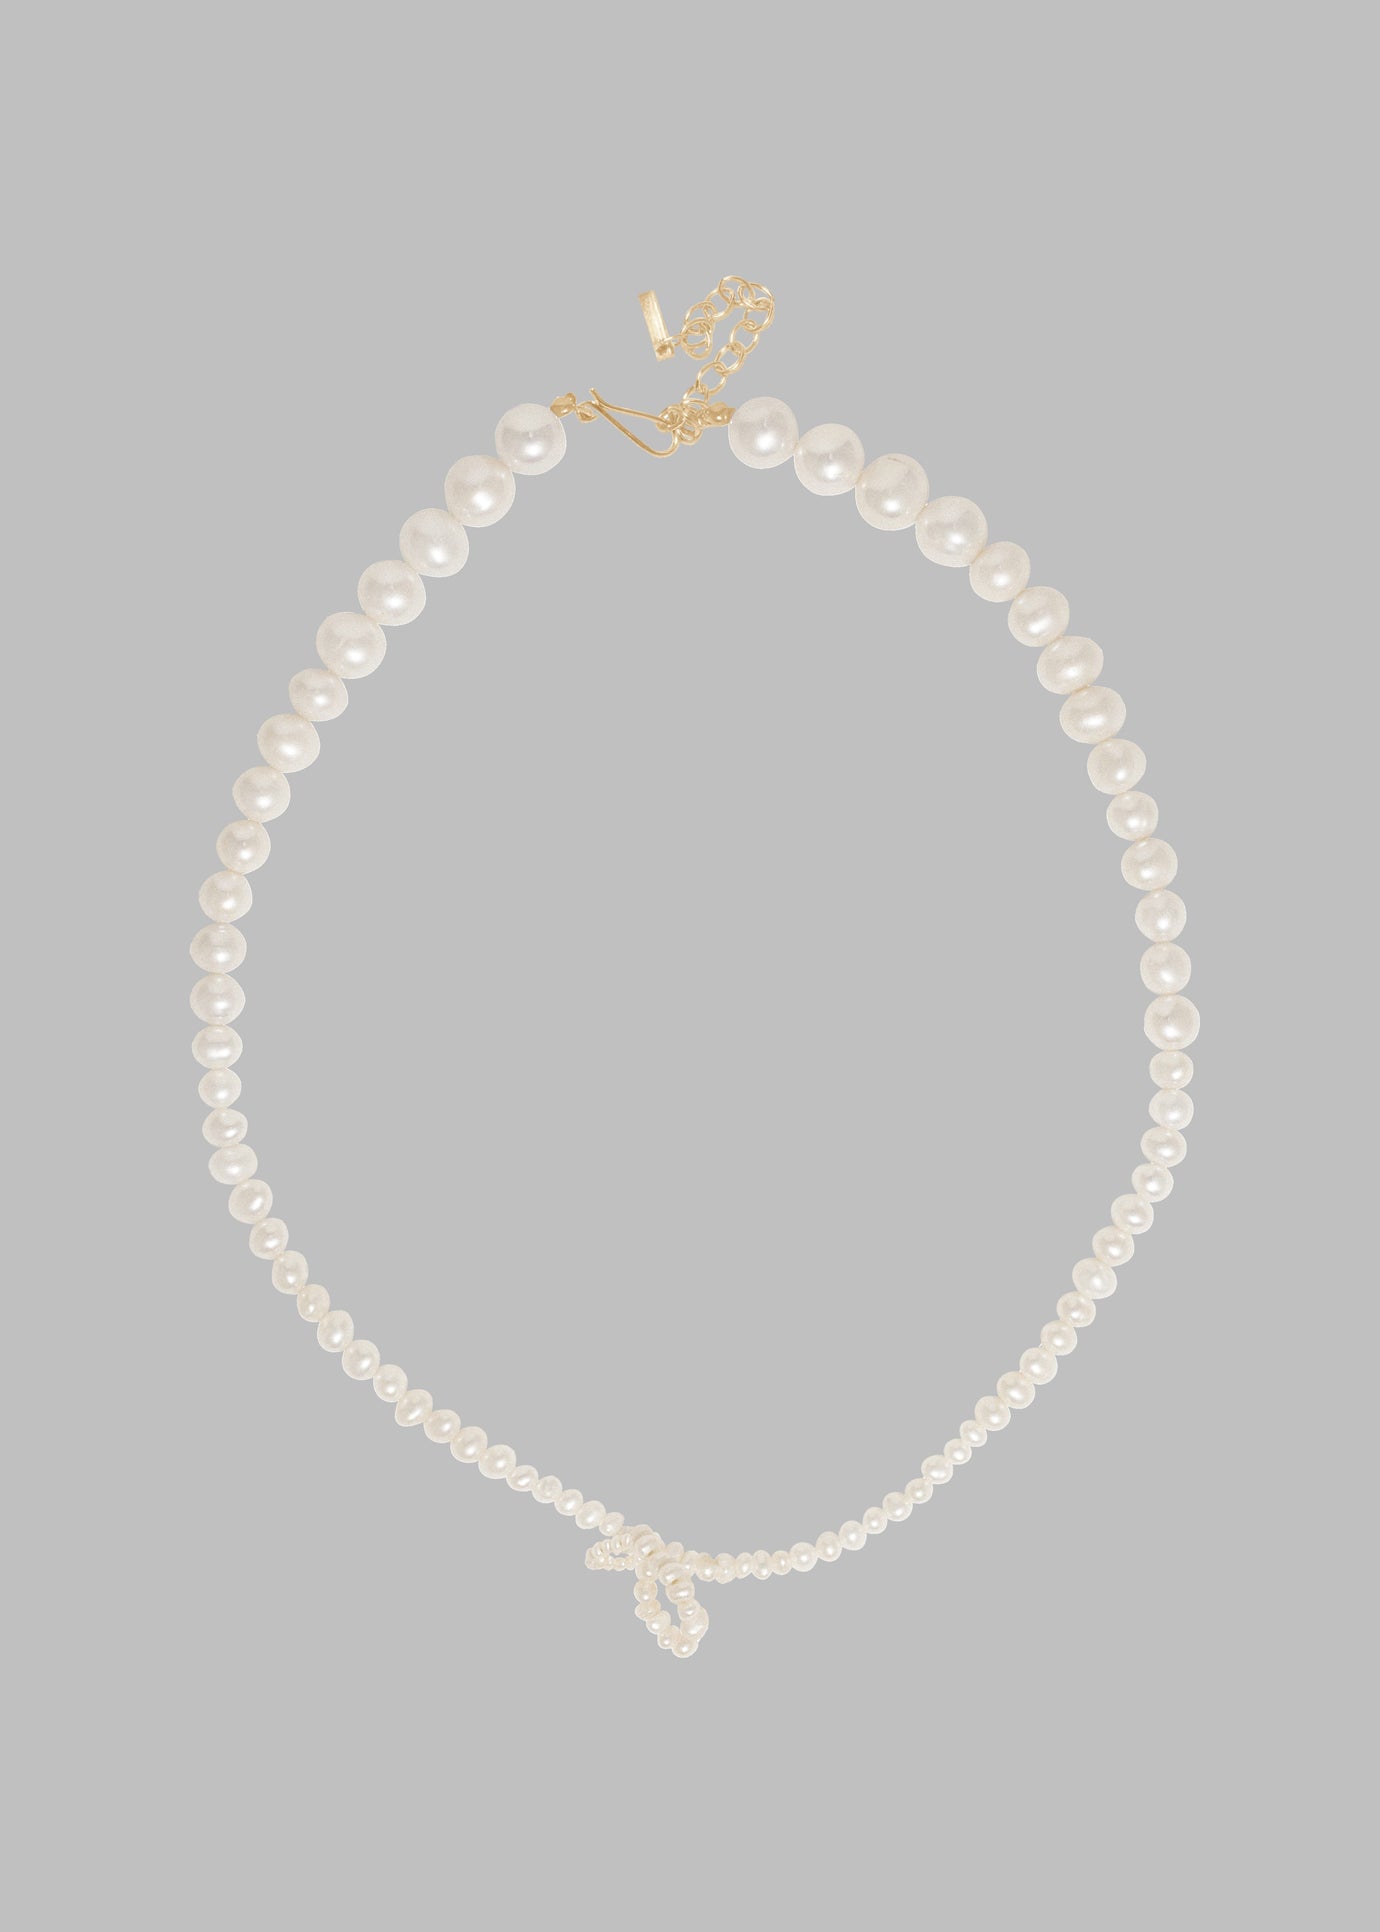 Completedworks Loop-The-Loop Necklace - Pearl/Gold Vermeil - 1